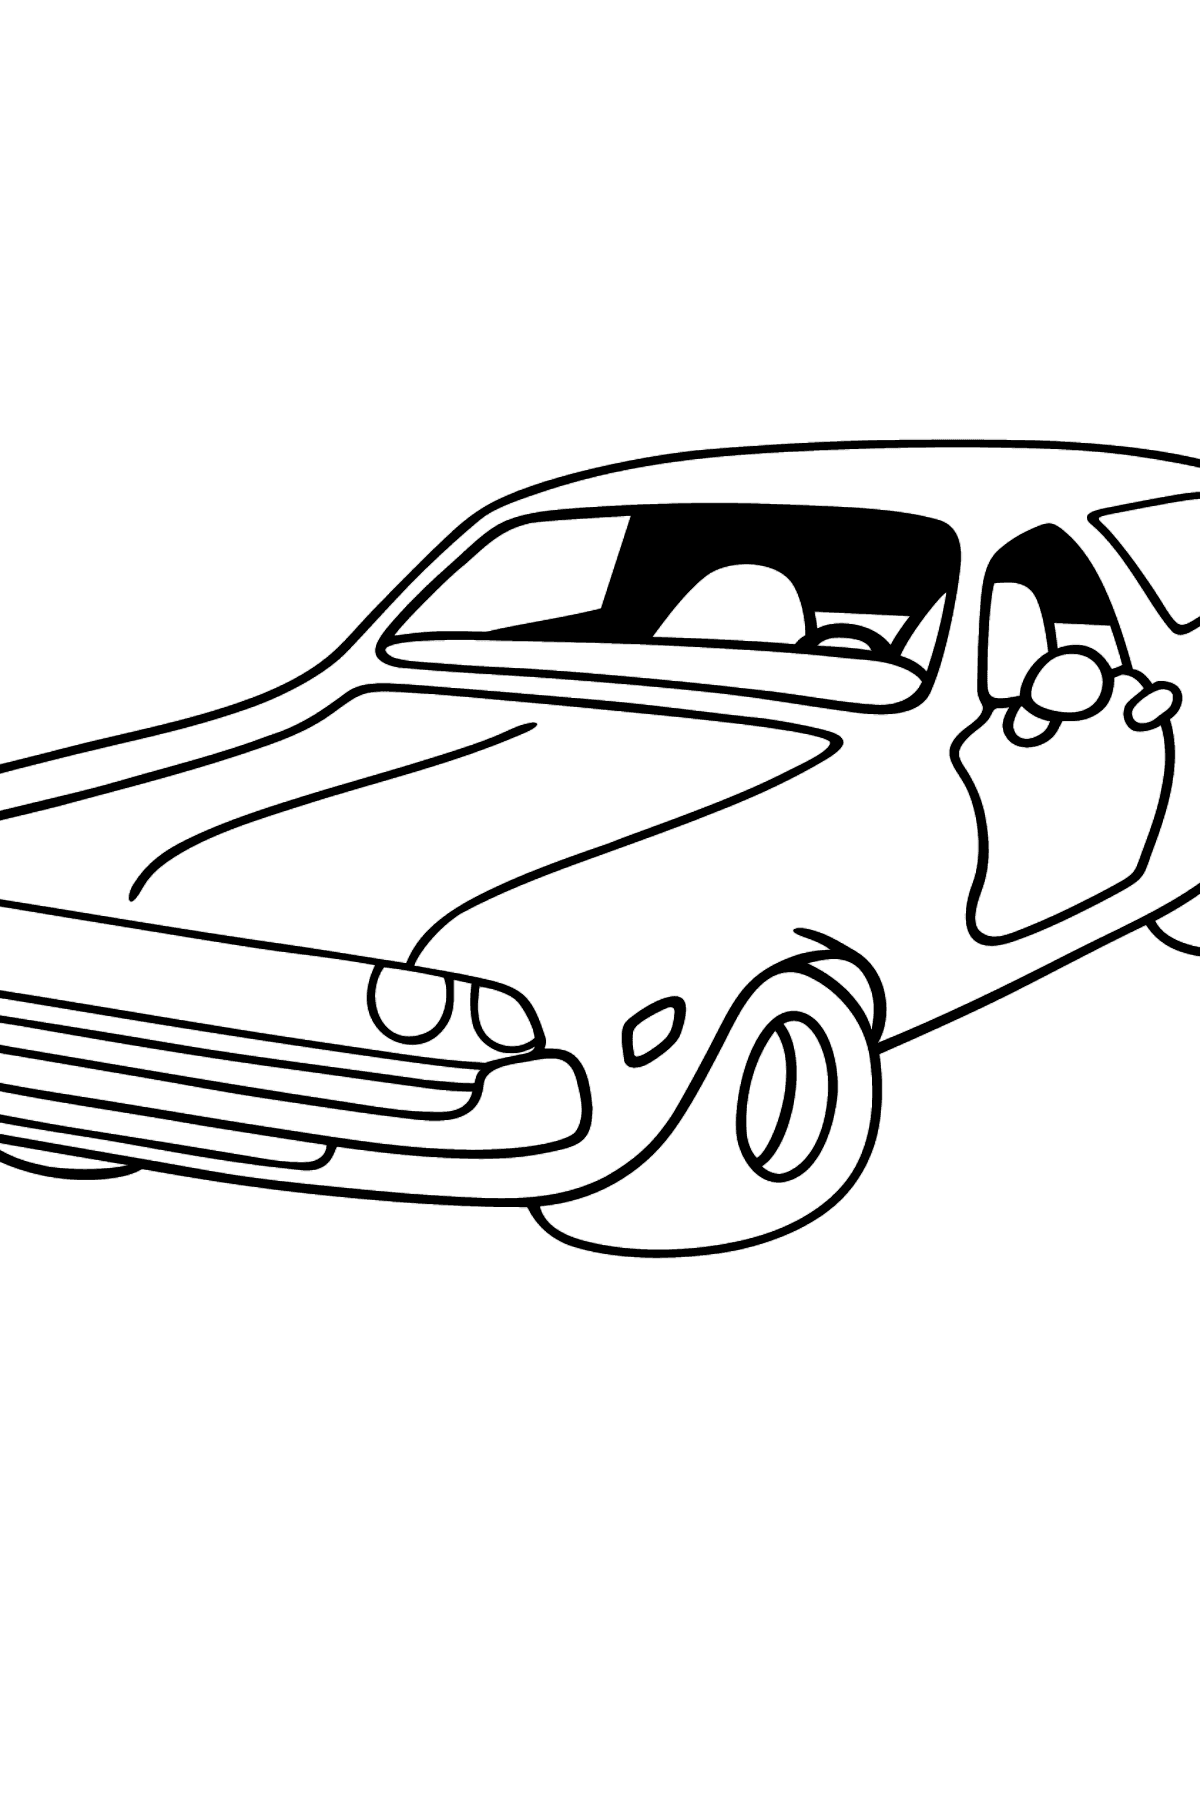 Раскраска Автомобиль для малышей - Картинки для Детей